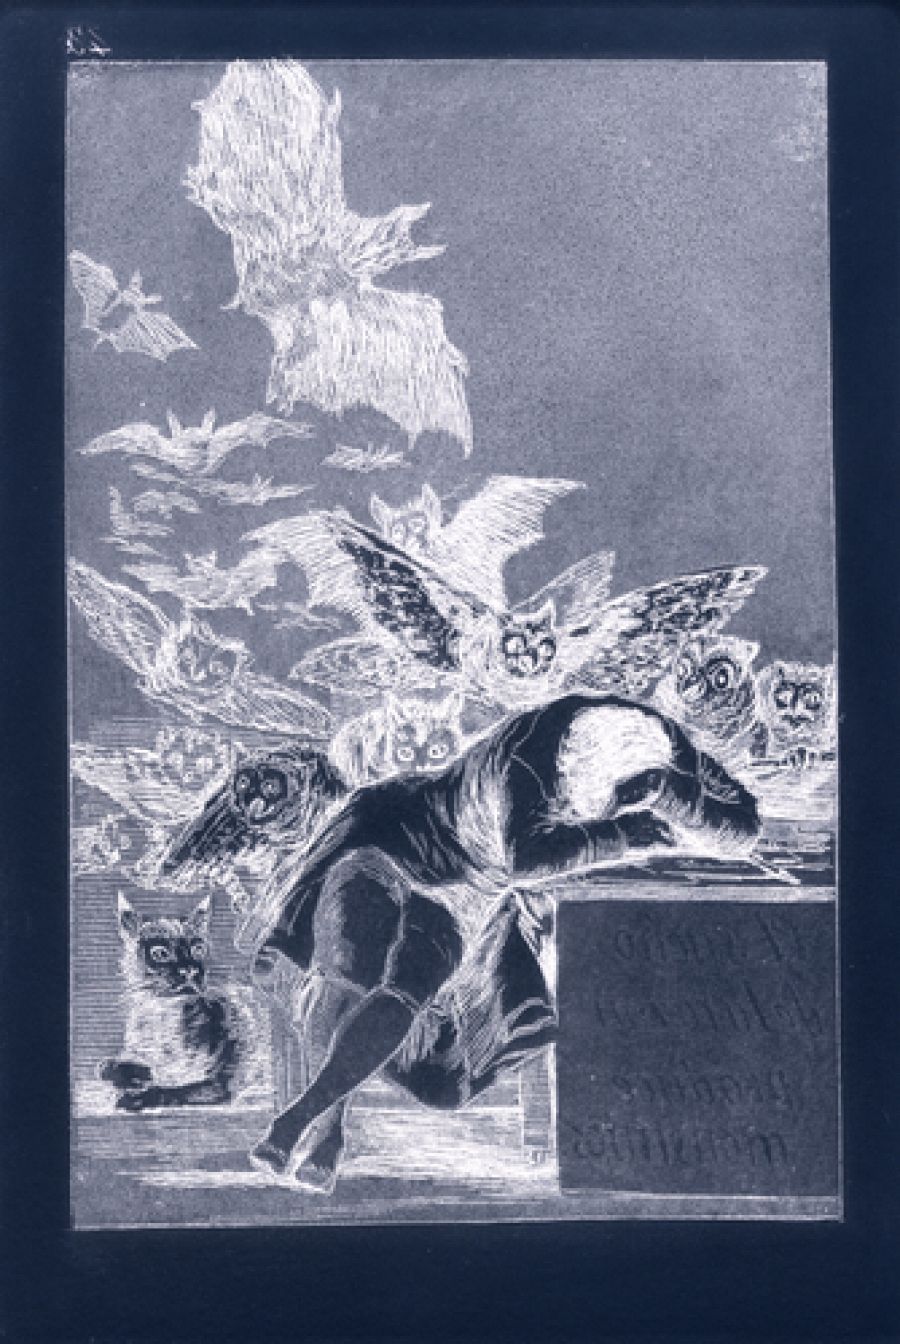 La restauración de las planchas de grabado de Goya revive el "pulso del pintor"